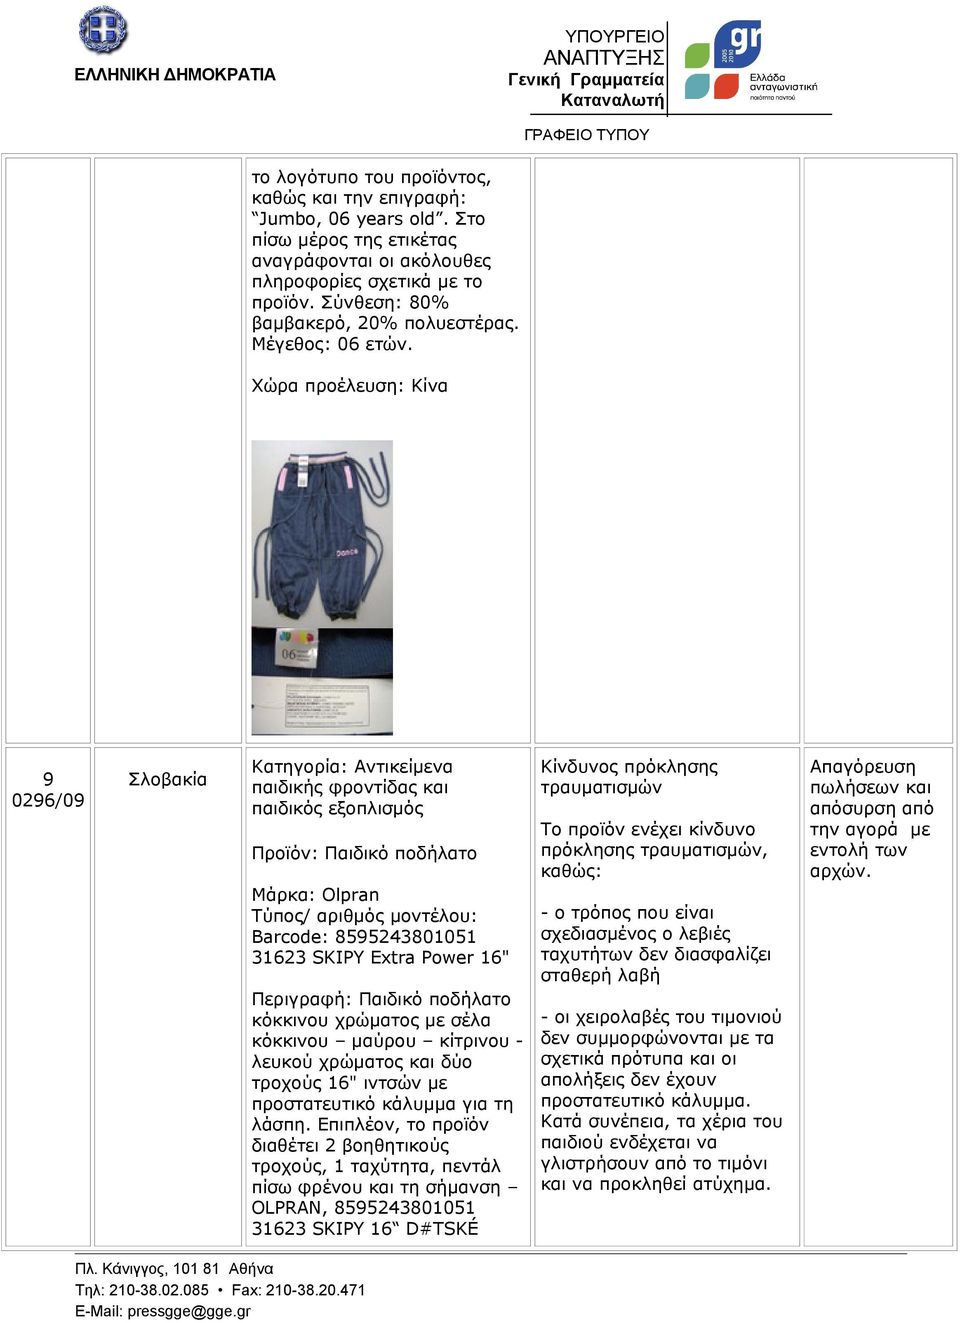 9 0296/09 Σλοβακία Κατηγορία: Αντικείμενα παιδικής φροντίδας και παιδικός εξοπλισμός Προϊόν: Παιδικό ποδήλατο Μάρκα: Olpran Barcode: 8595243801051 31623 SKIPY Extra Power 16" Περιγραφή: Παιδικό